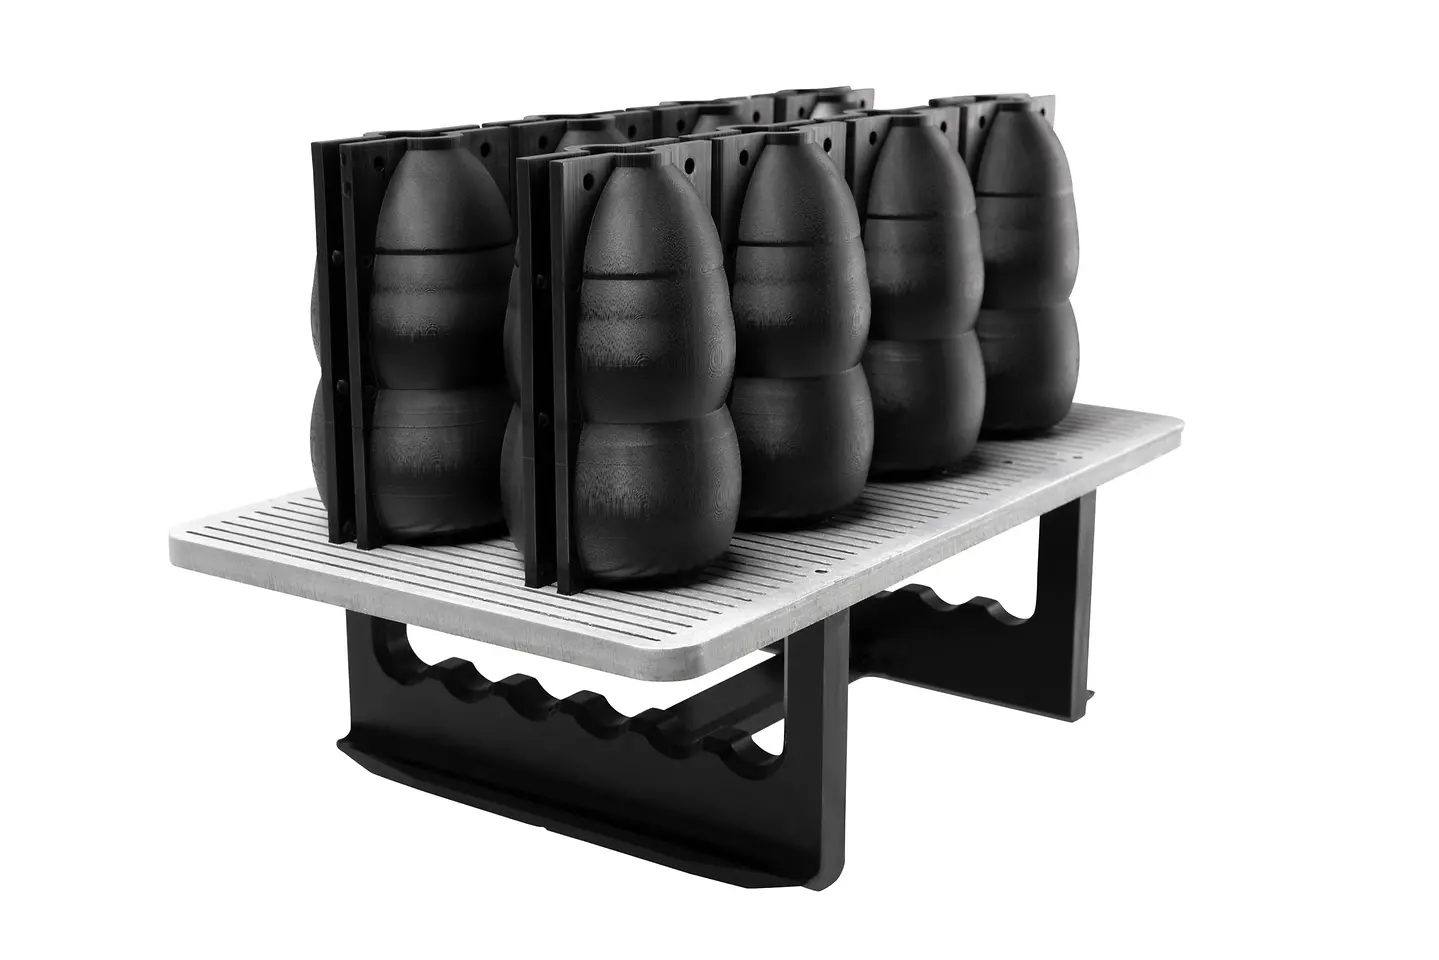 3D-gedruckte Flaschenformen unter Einsatz des neuen Materials xPEEK147-Black.